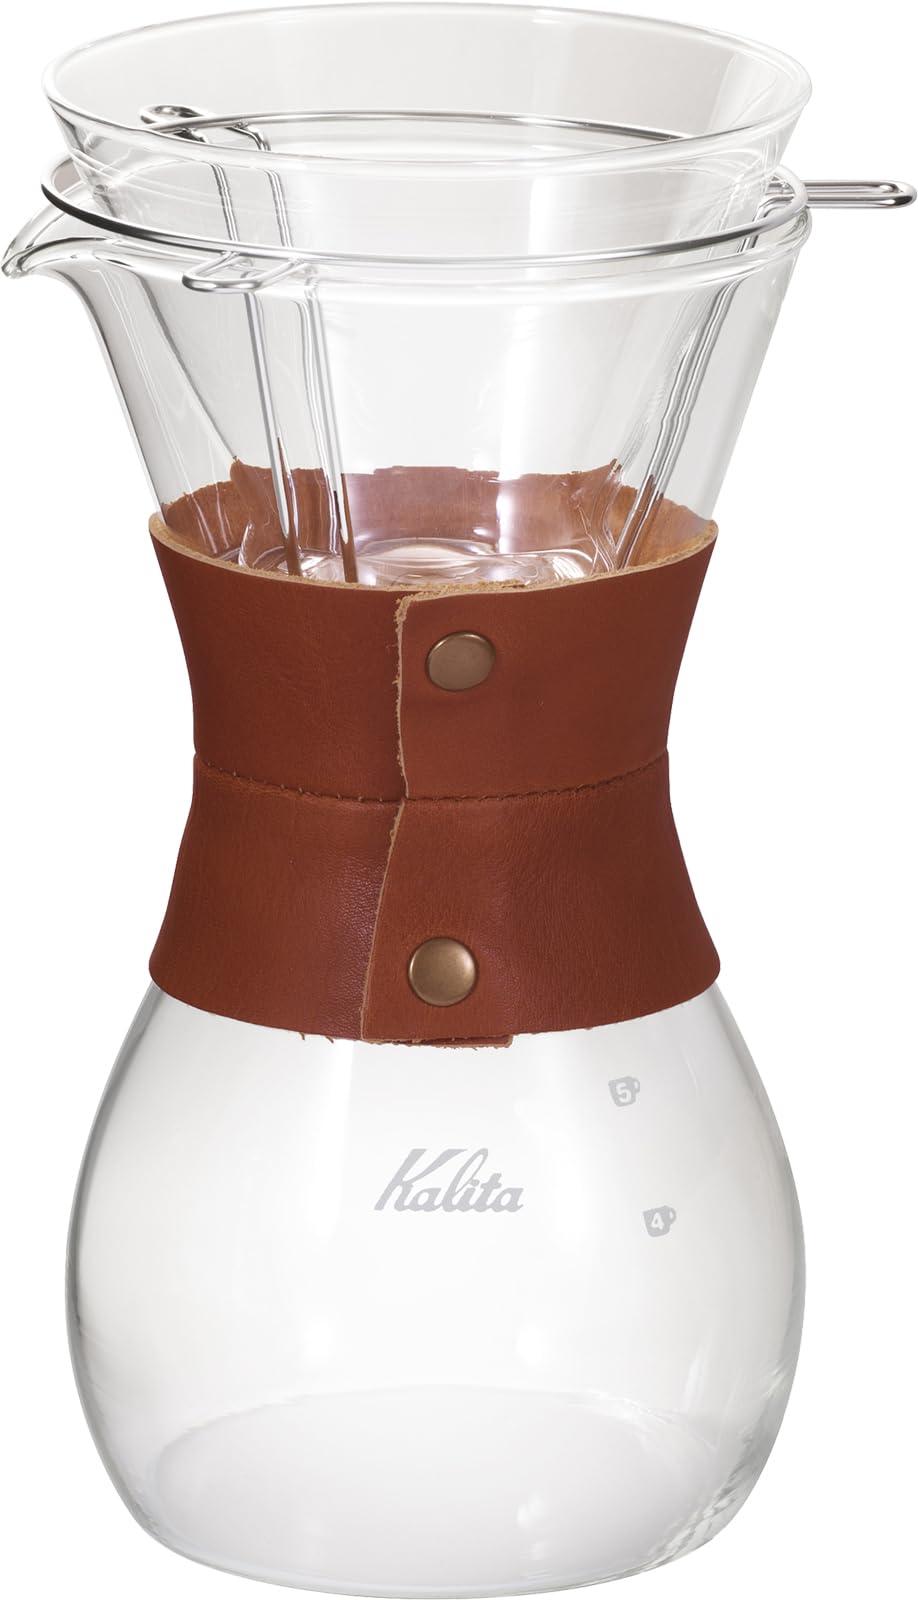 カリタ Kalita コーヒー ウェーブシリーズ ウェーブスタイル レザー 2~4人用 #35160